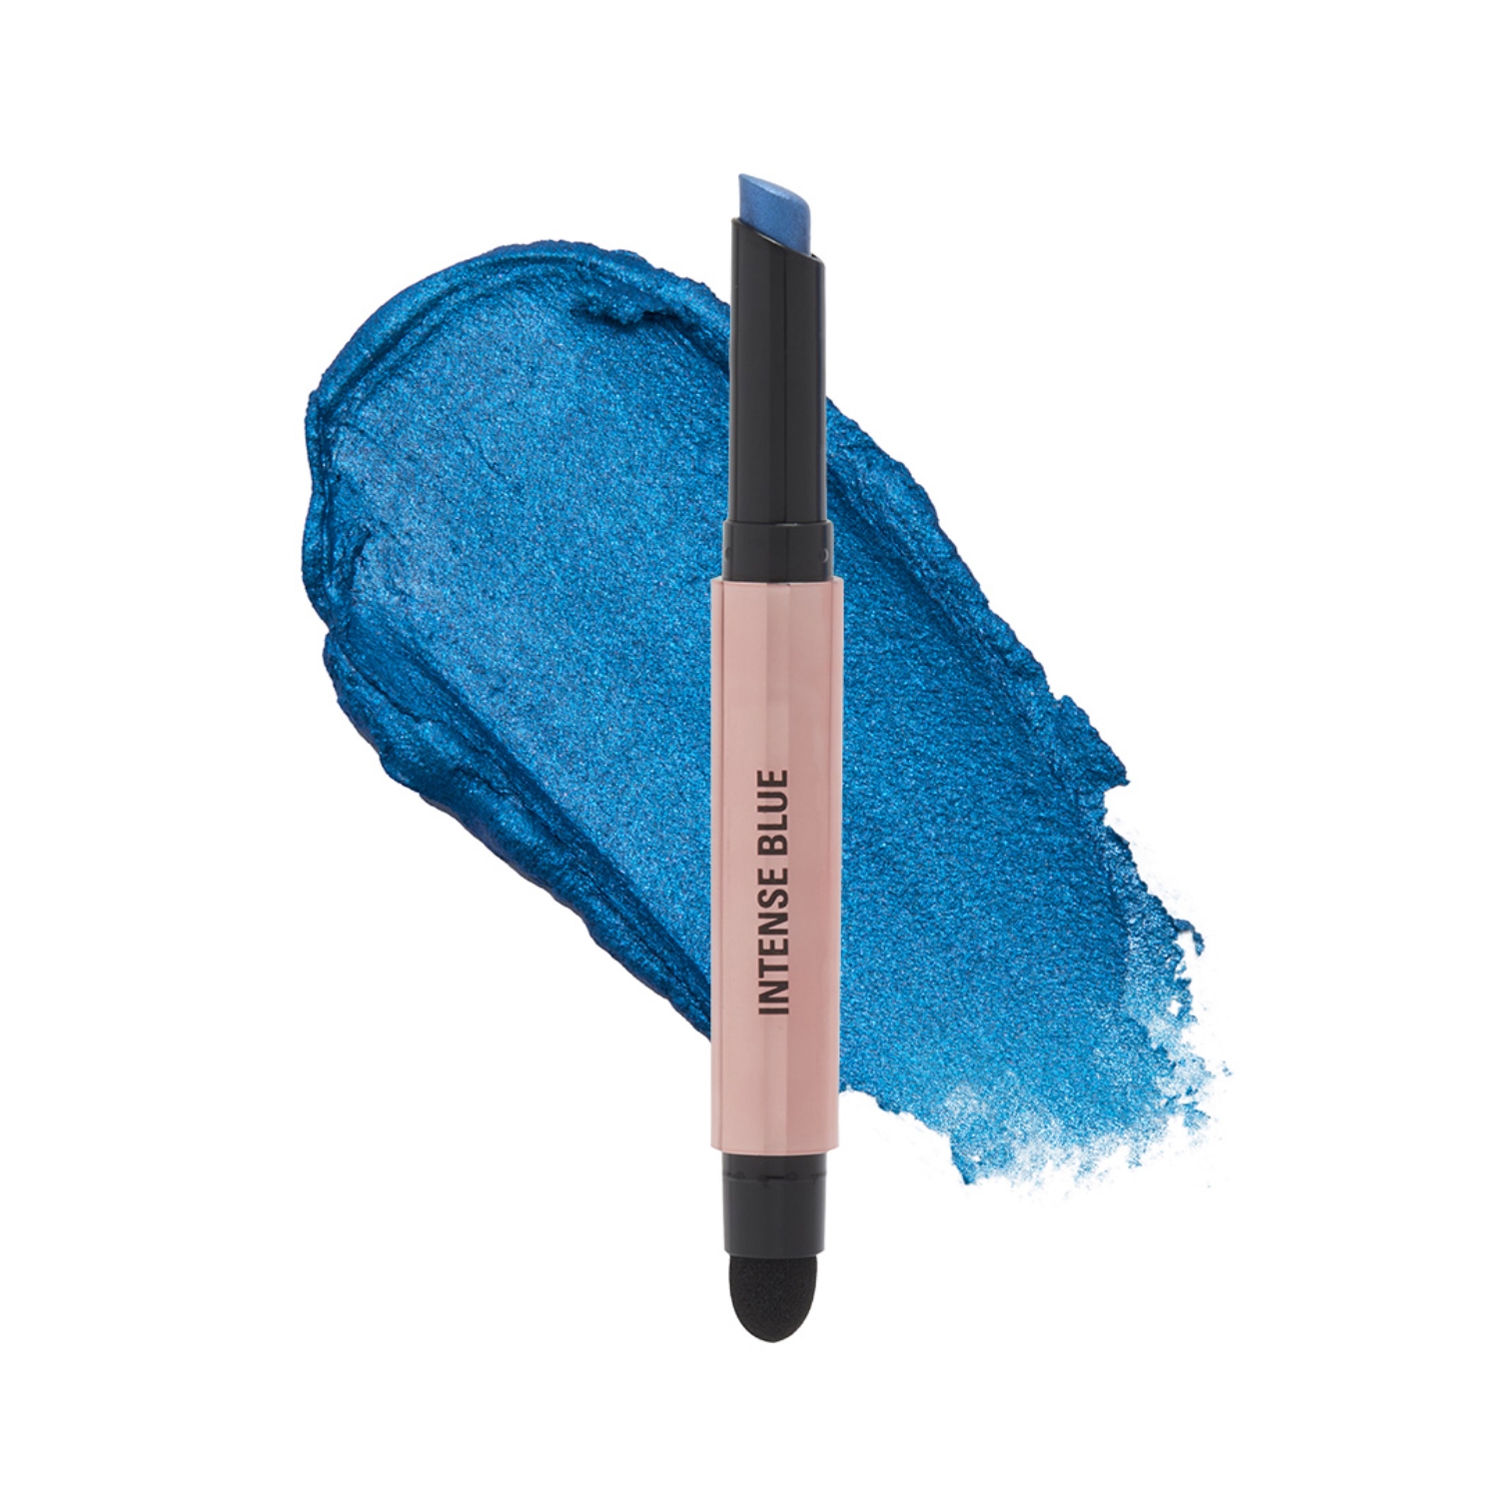 Makeup Revolution | Makeup Revolution Lustre Wand Eyeshadow Stick - Intense Blue (1.6g)